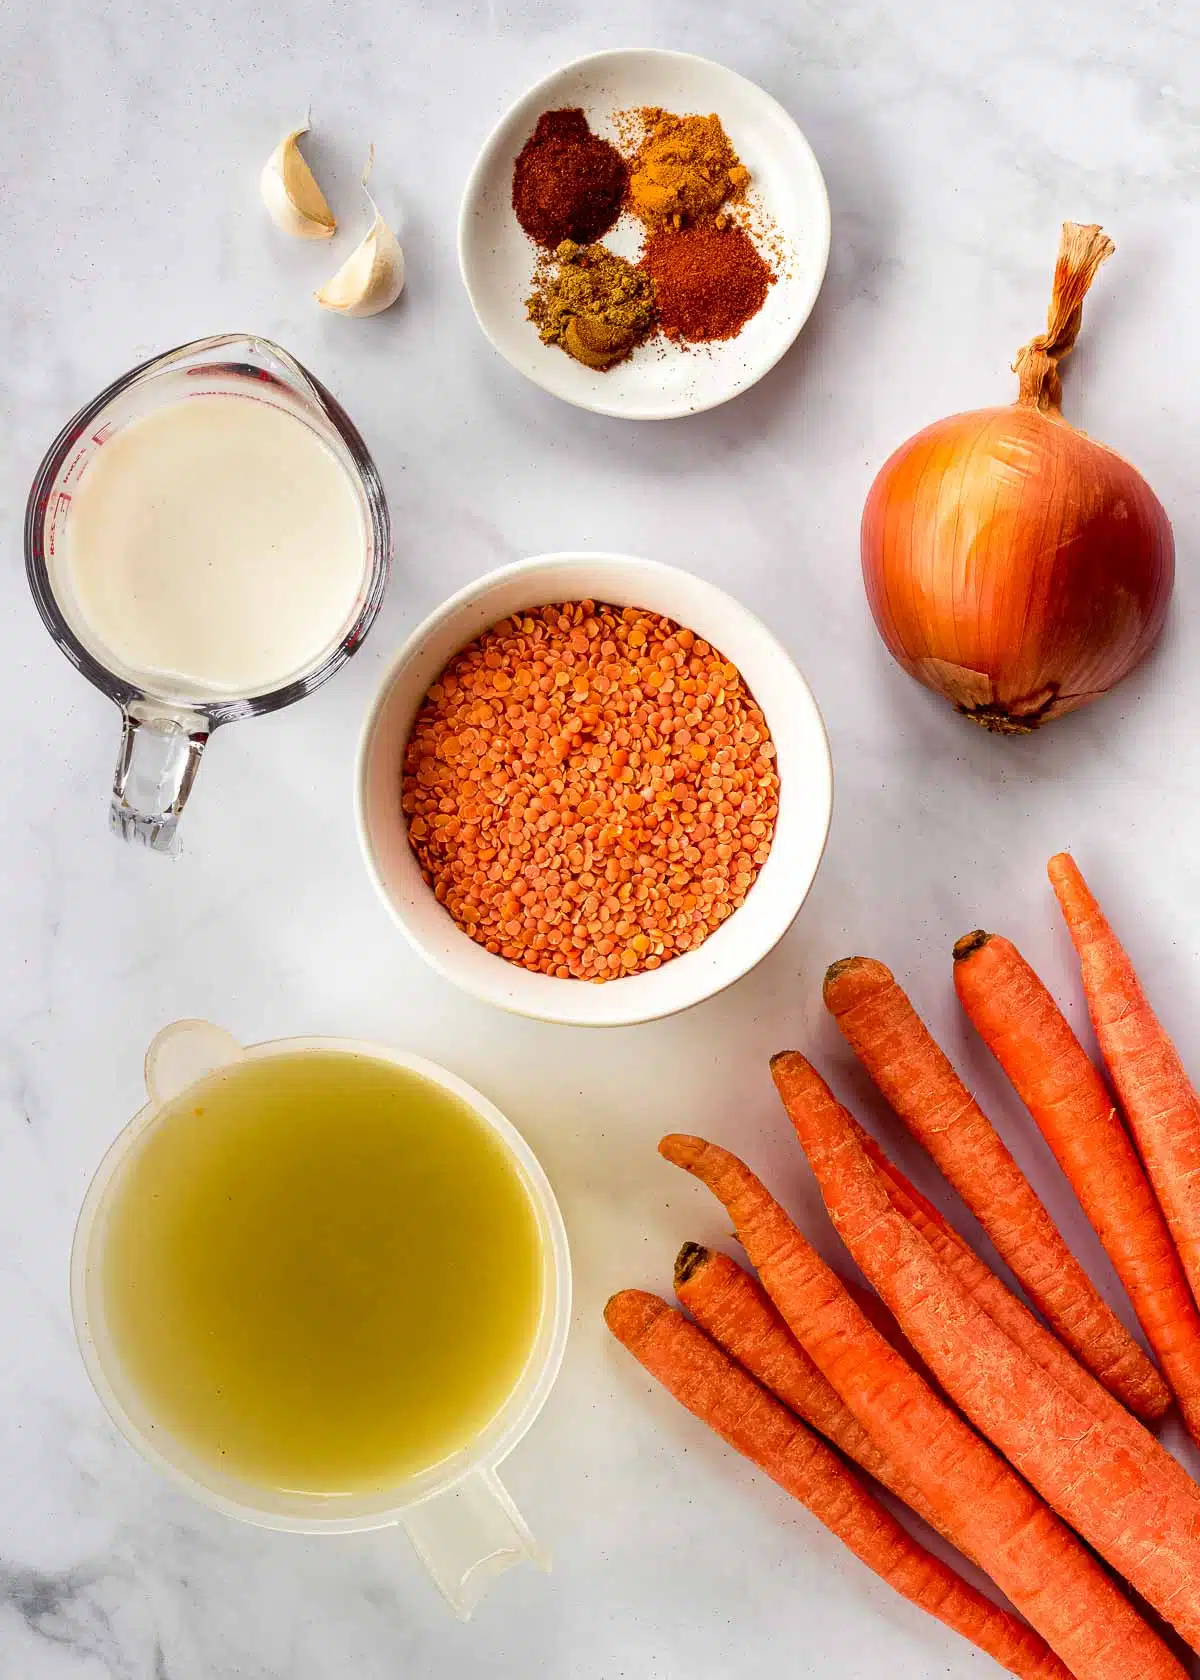 Υλικά για τη σούπα με φακές και καρότο: κόκκινες φακές, κρεμμύδι, σκόρδο, καρότα, ζωμός, μπαχαρικά και γάλα.